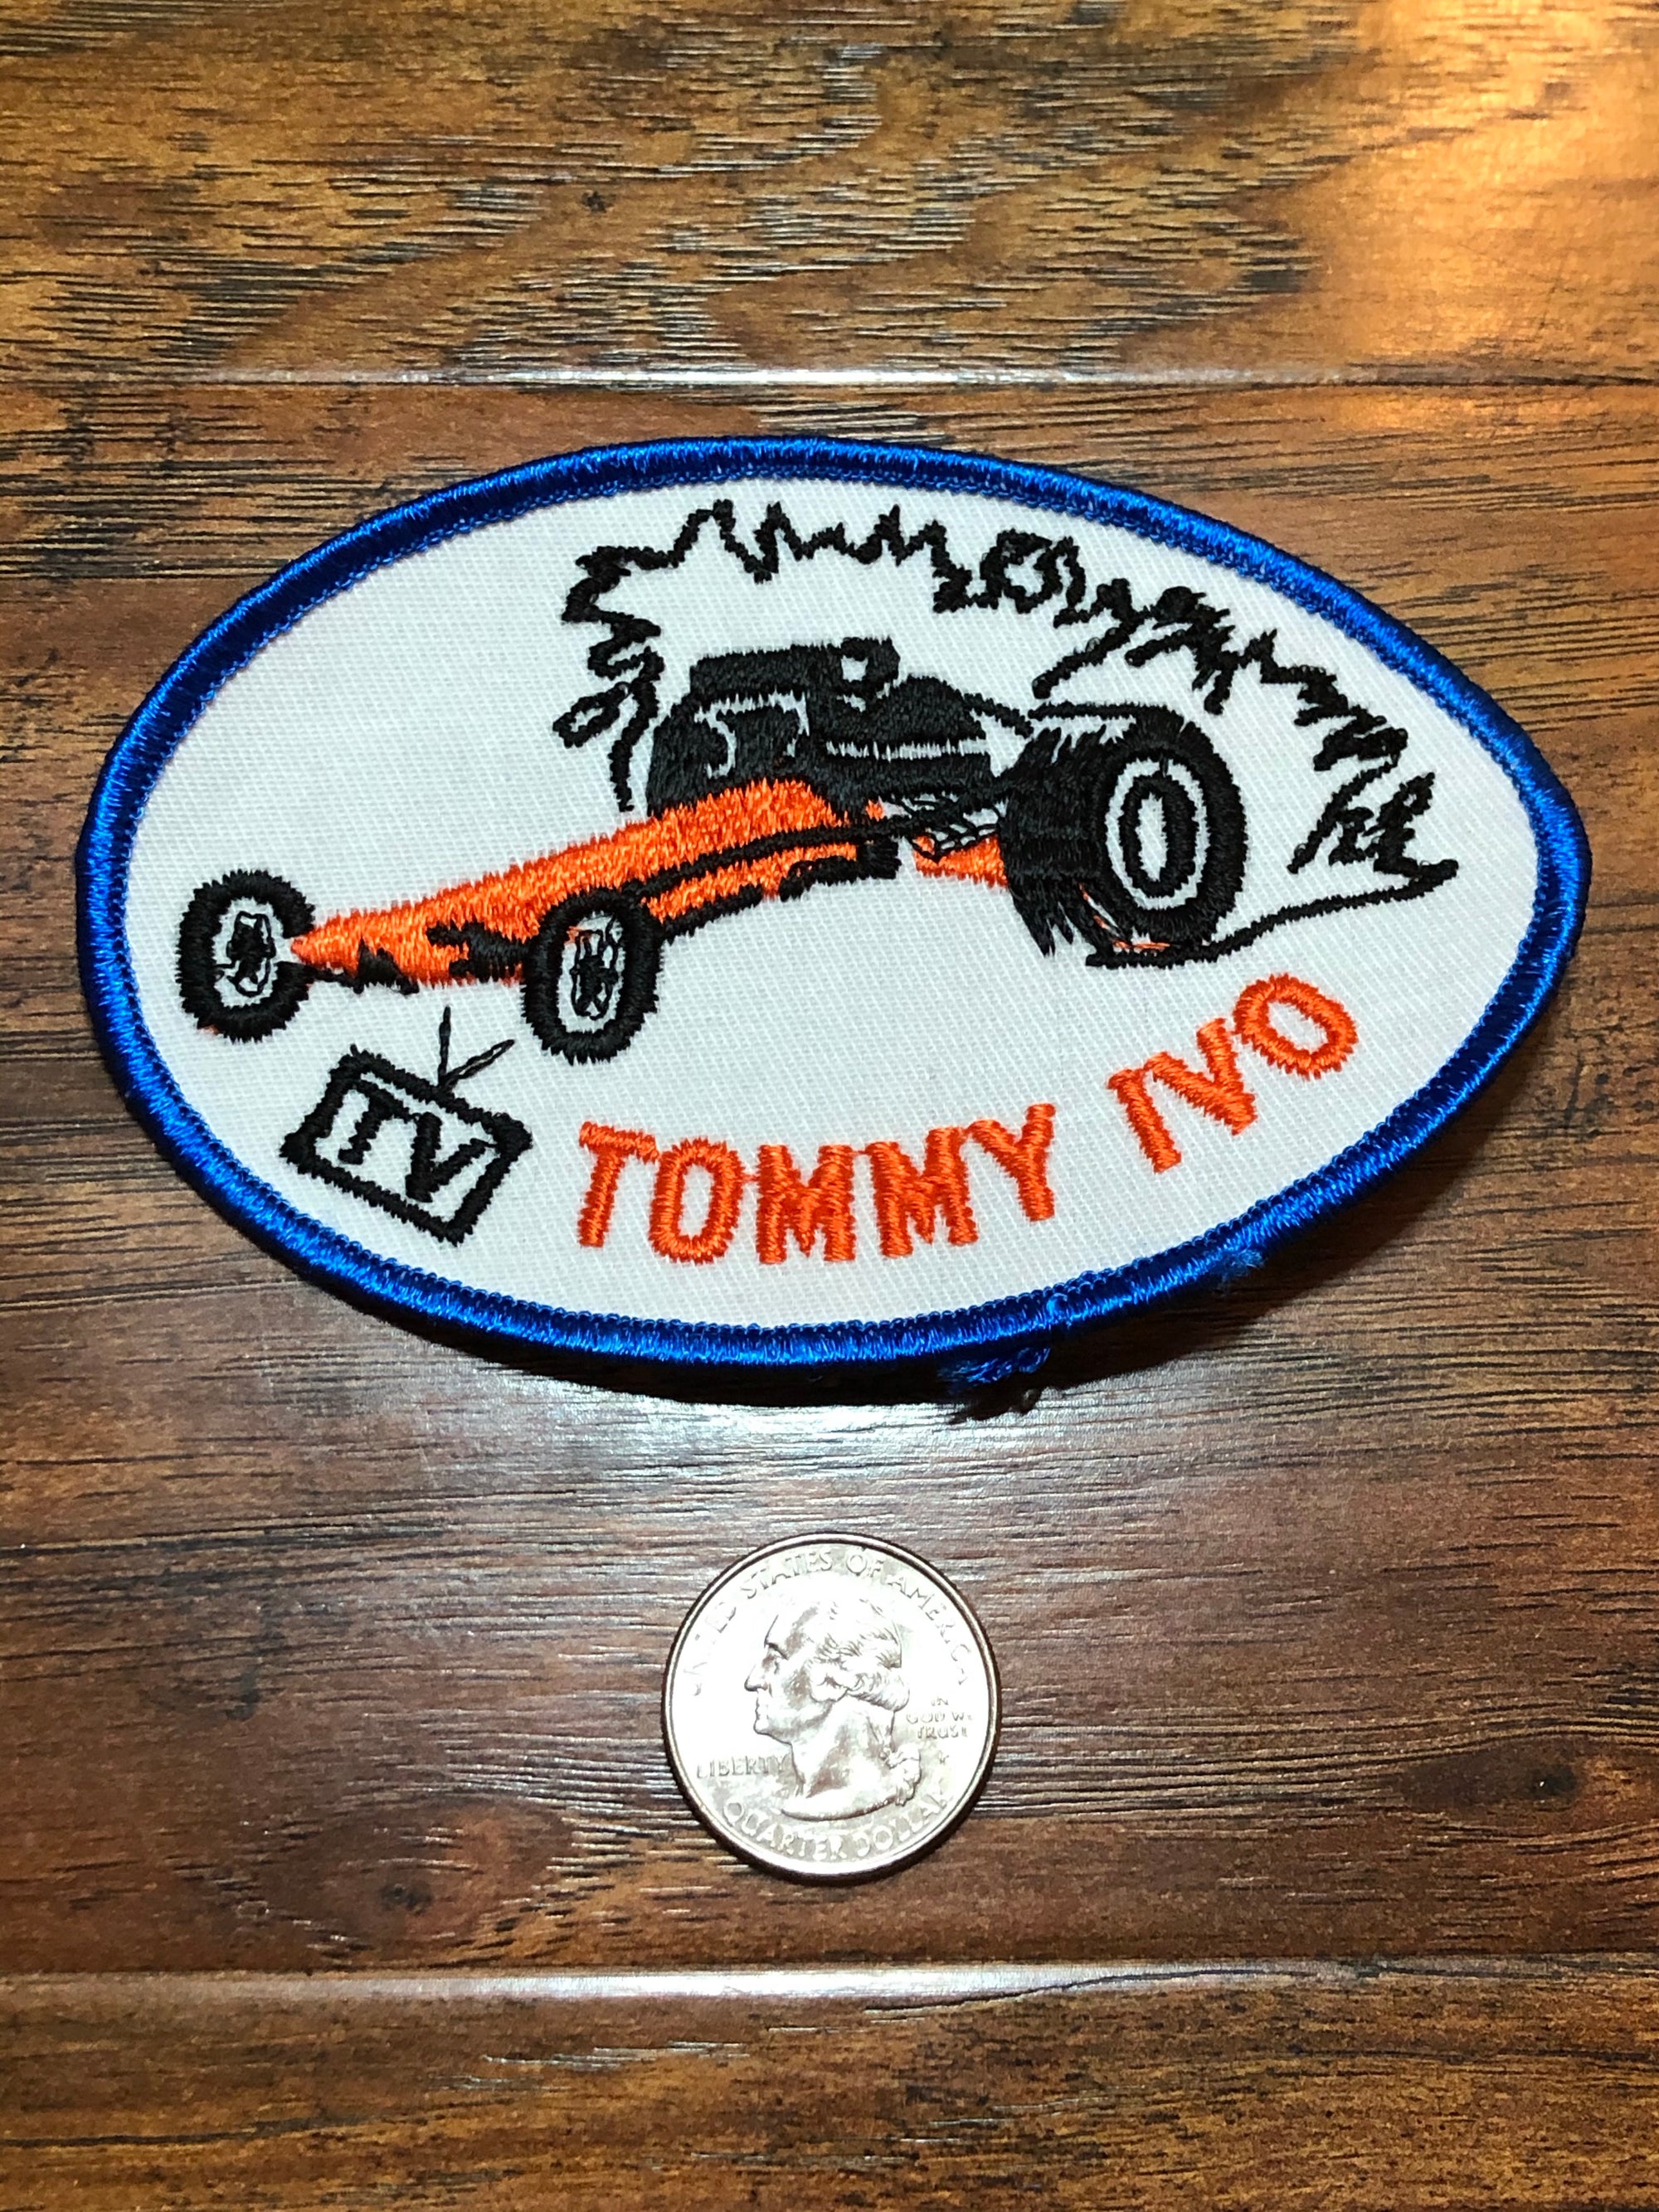 Vintage Tommy IVO Racing